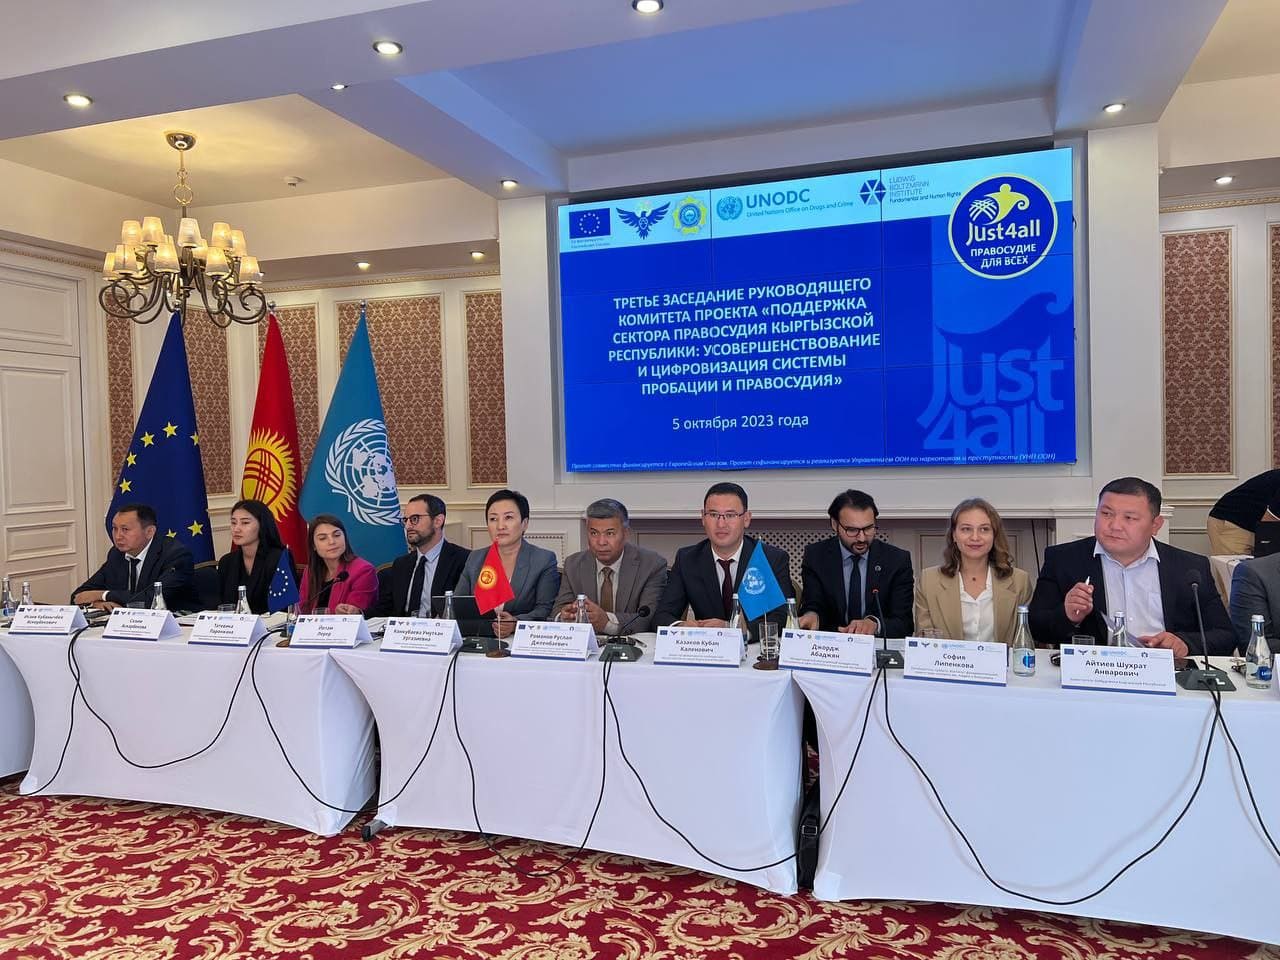 Состоялось третье заседание руководящего комитета проекта «Поддержка сектора правосудия Кыргызской Республики: усовершенствование и цифровизация системы пробации и правосудия»